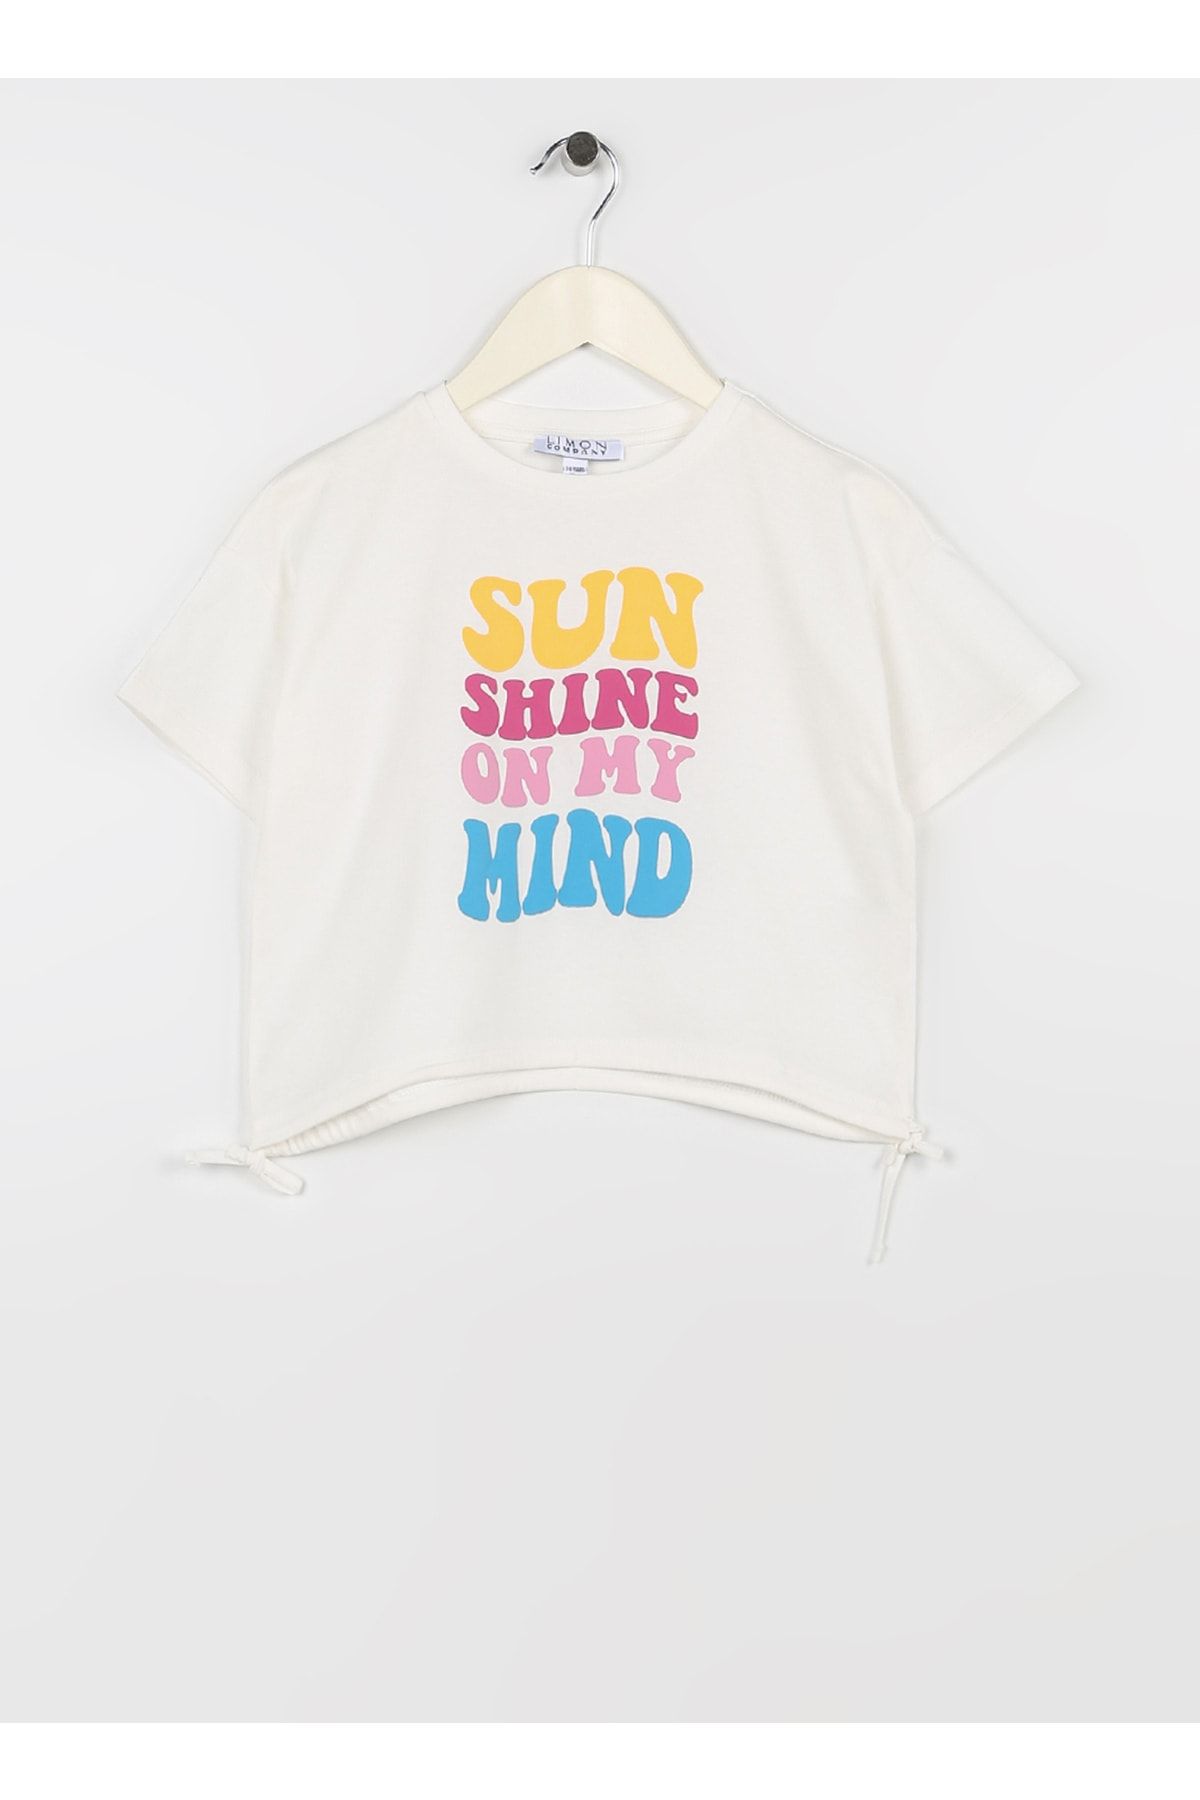 LİMON COMPANY Limon Baskılı Ekru Kız Çocuk T-shirt Suns Gırl-23